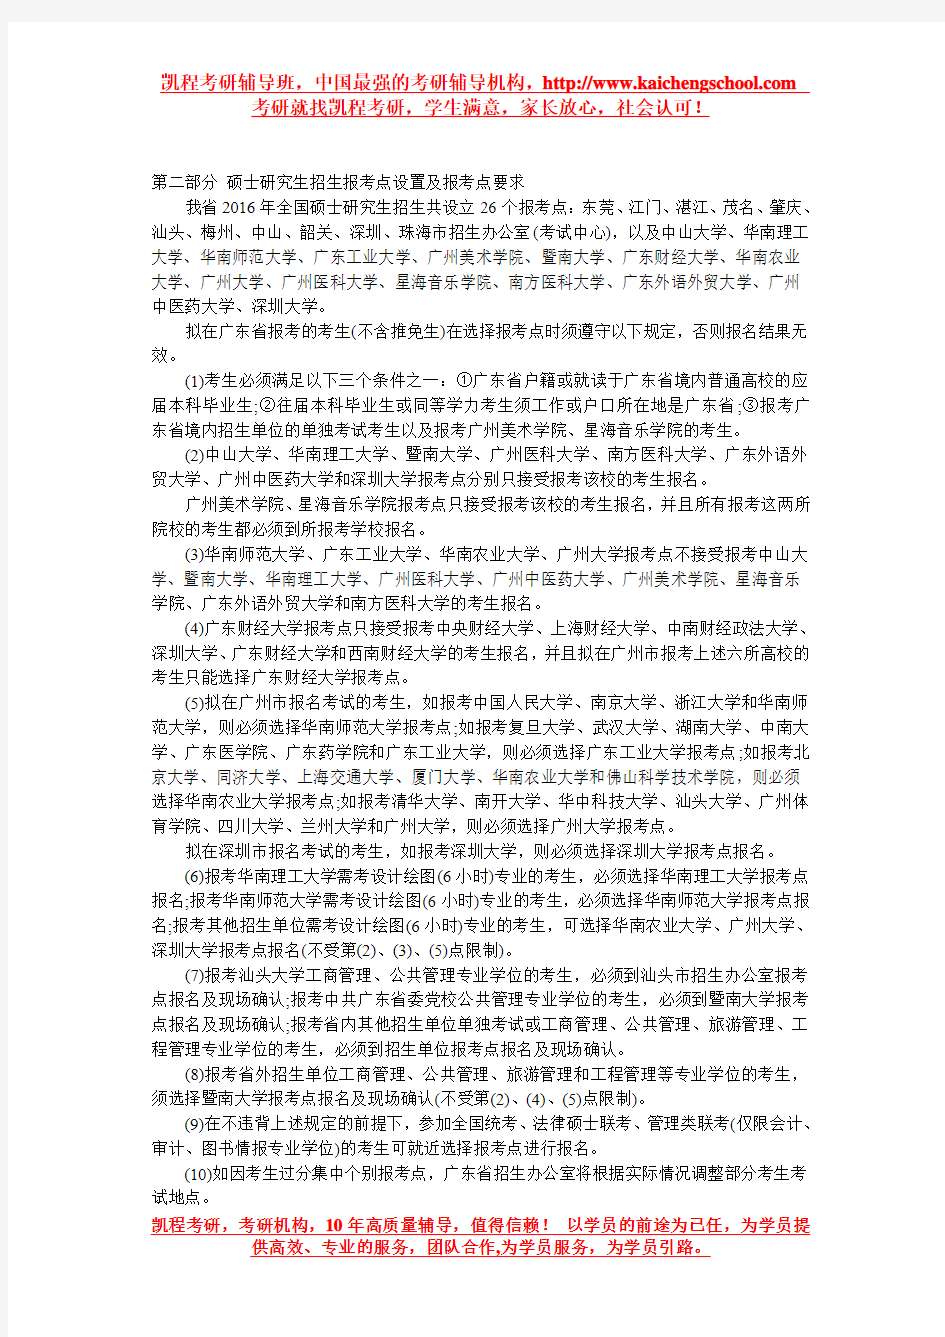 广东省2016硕士研究生详细招生考试网报公告